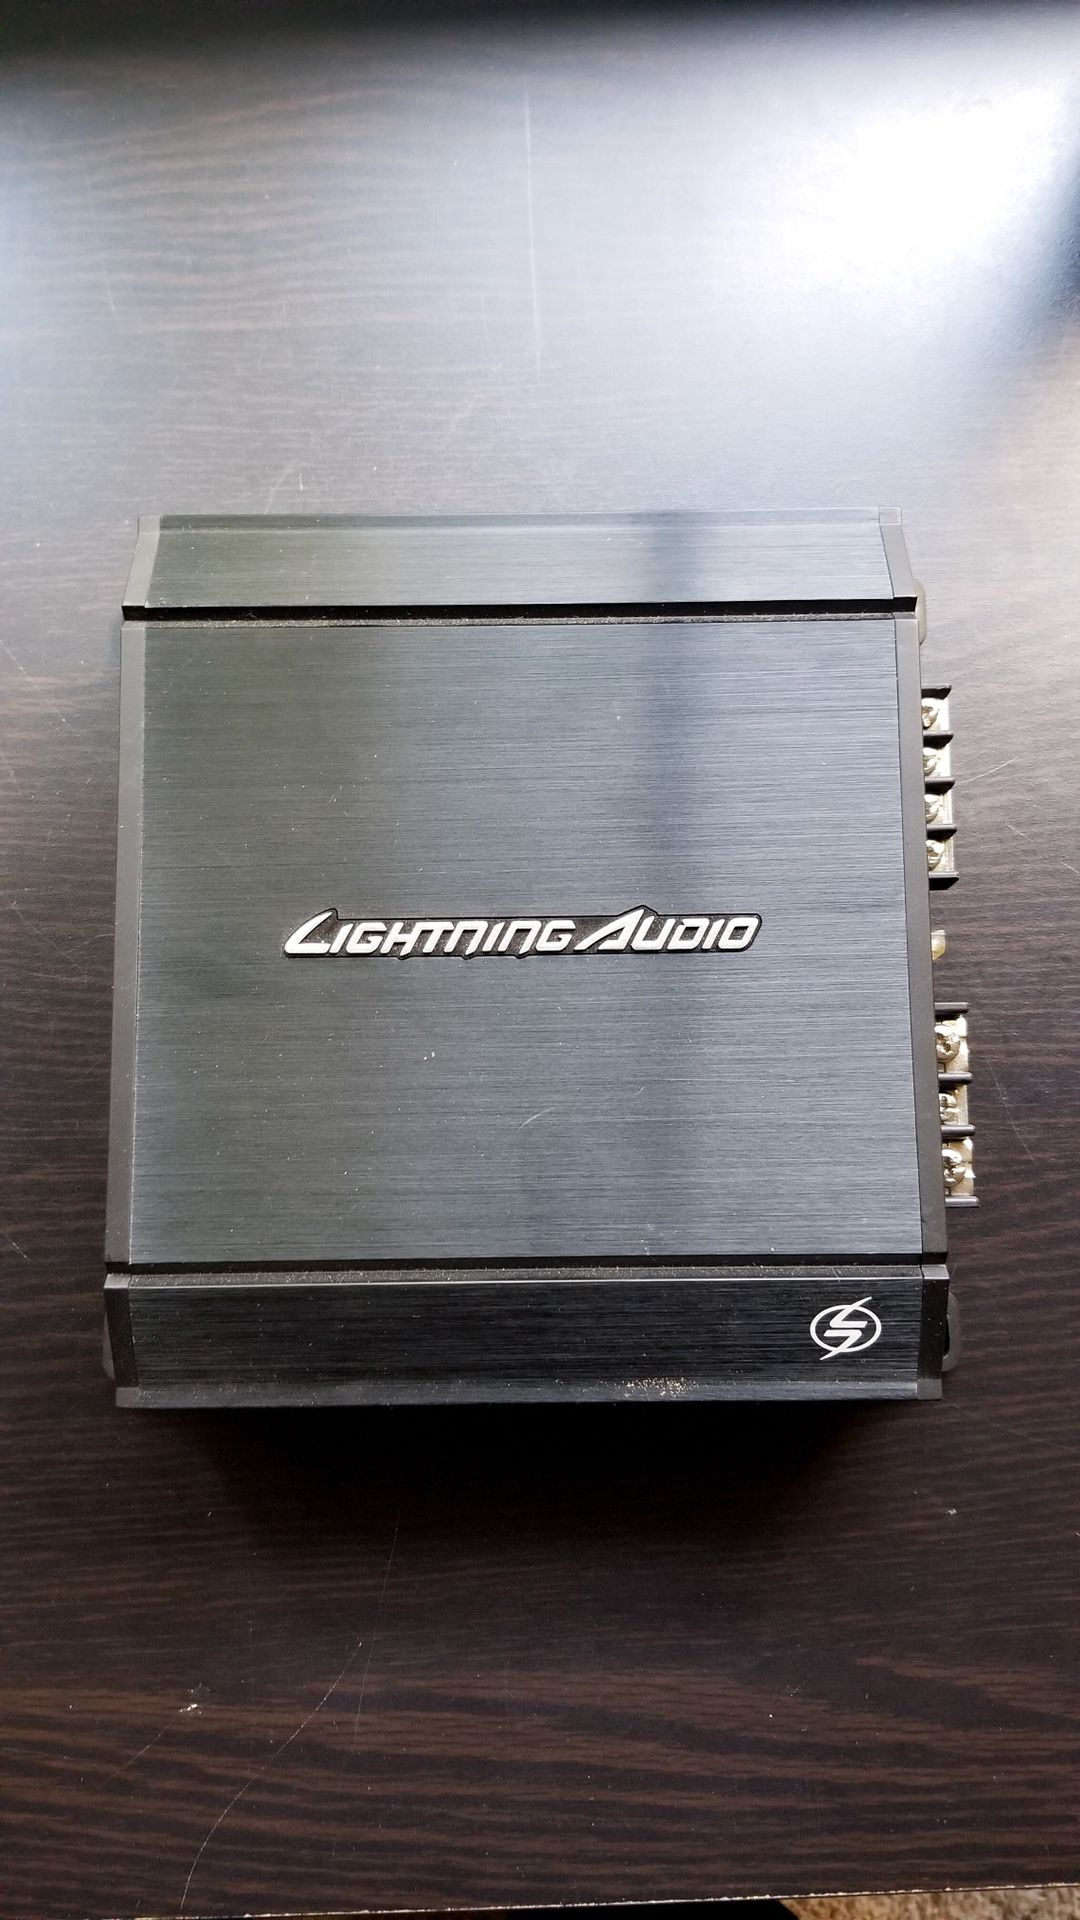 Lighting Audio amplifier